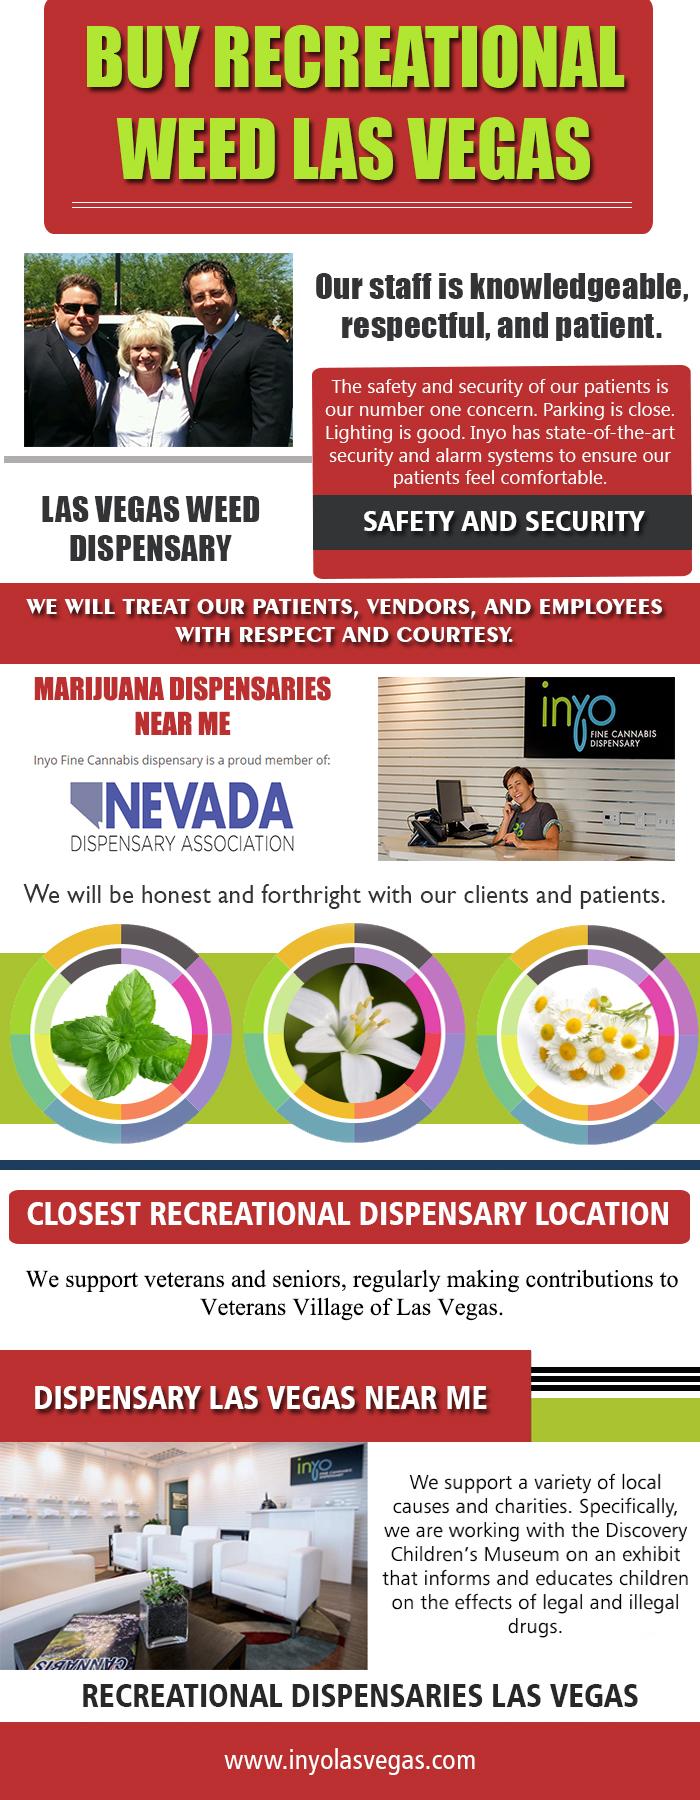 Buy Recreational Weed Las Vegas